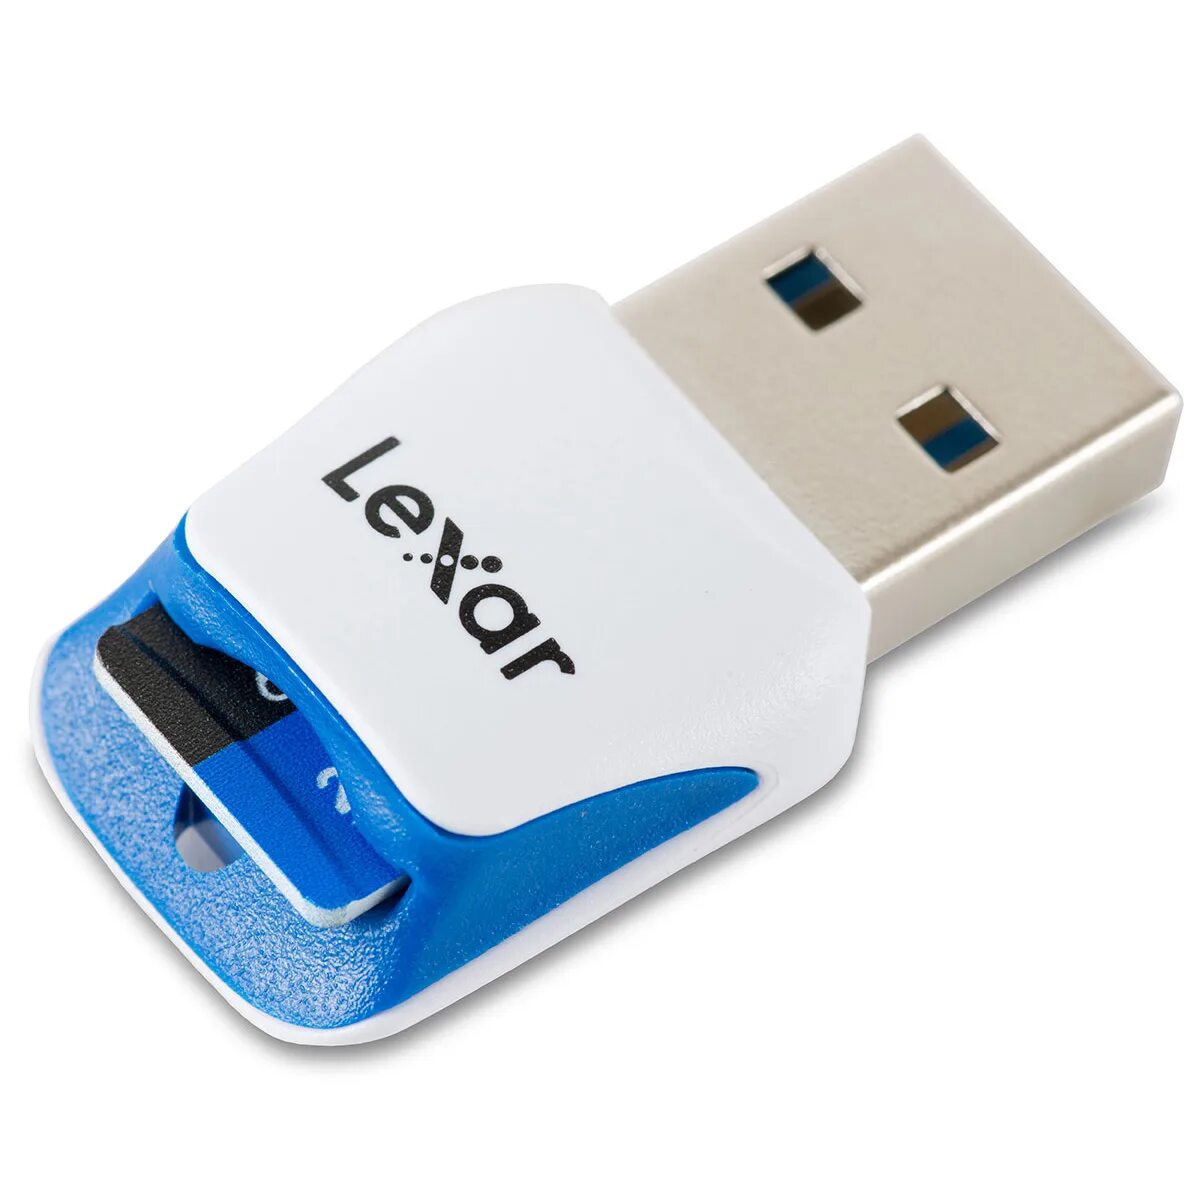 Купить картридер микро usb. Адаптер USB 3.0 микро SD. USB 3.0 MICROSD Card Reader. Картридер для микро SD USB 3.0. USB SD Кардридер USB 3.0.